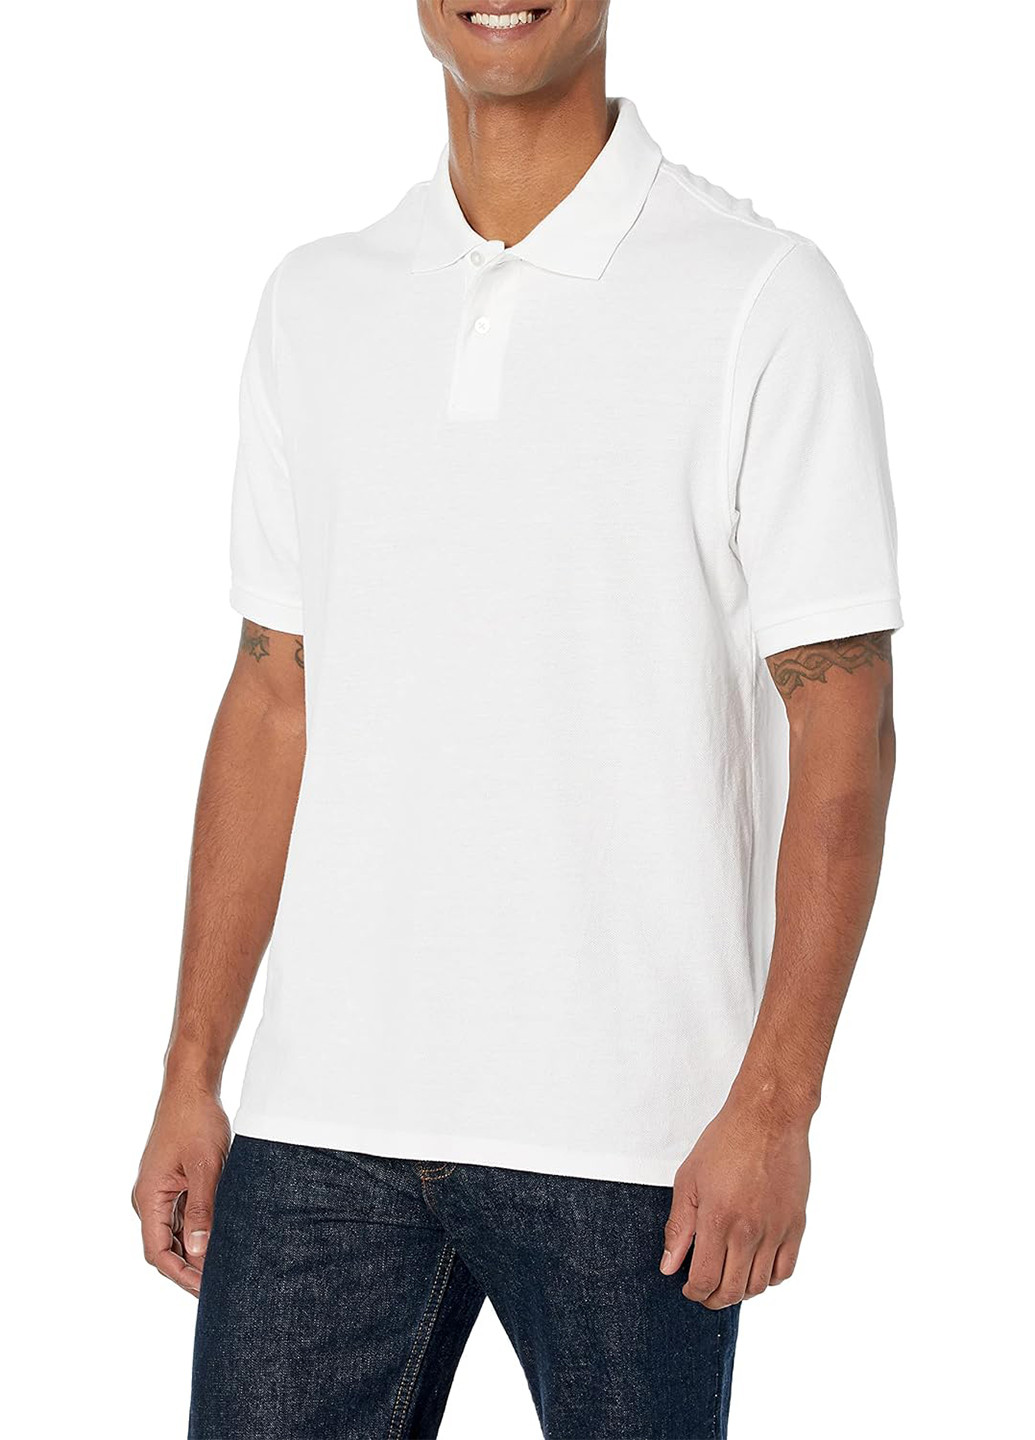 Белая футболка-поло для мужчин Amazon Essentials однотонная